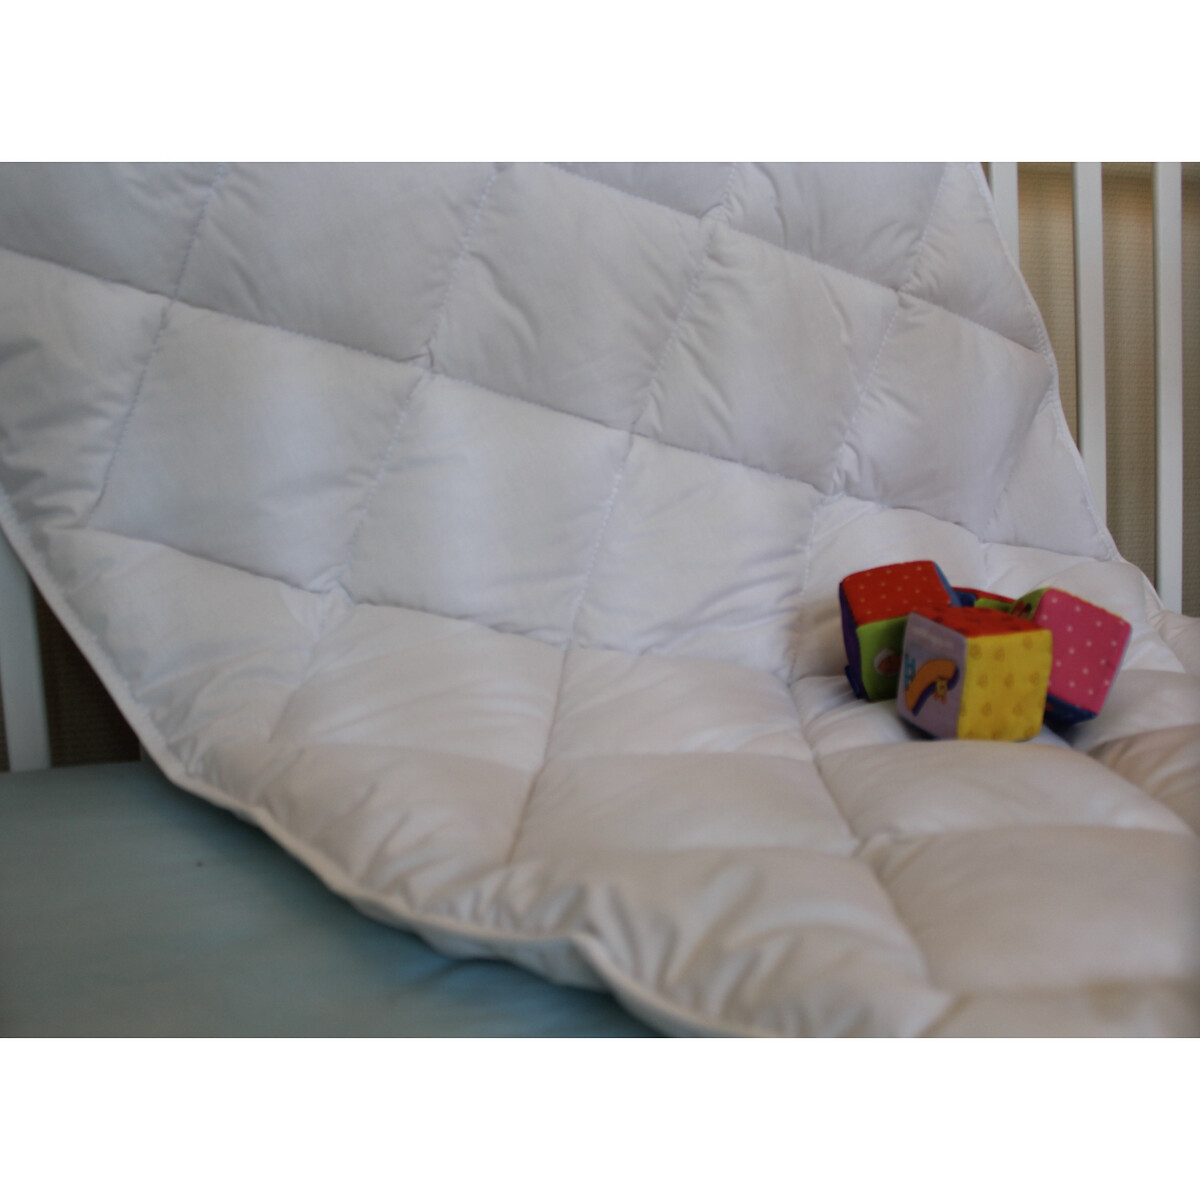 Одеяло LaRedoute Детское синтетическое с чехлом 100 хлопок 75 x 120 см белый, размер 75 x 120 см - фото 3